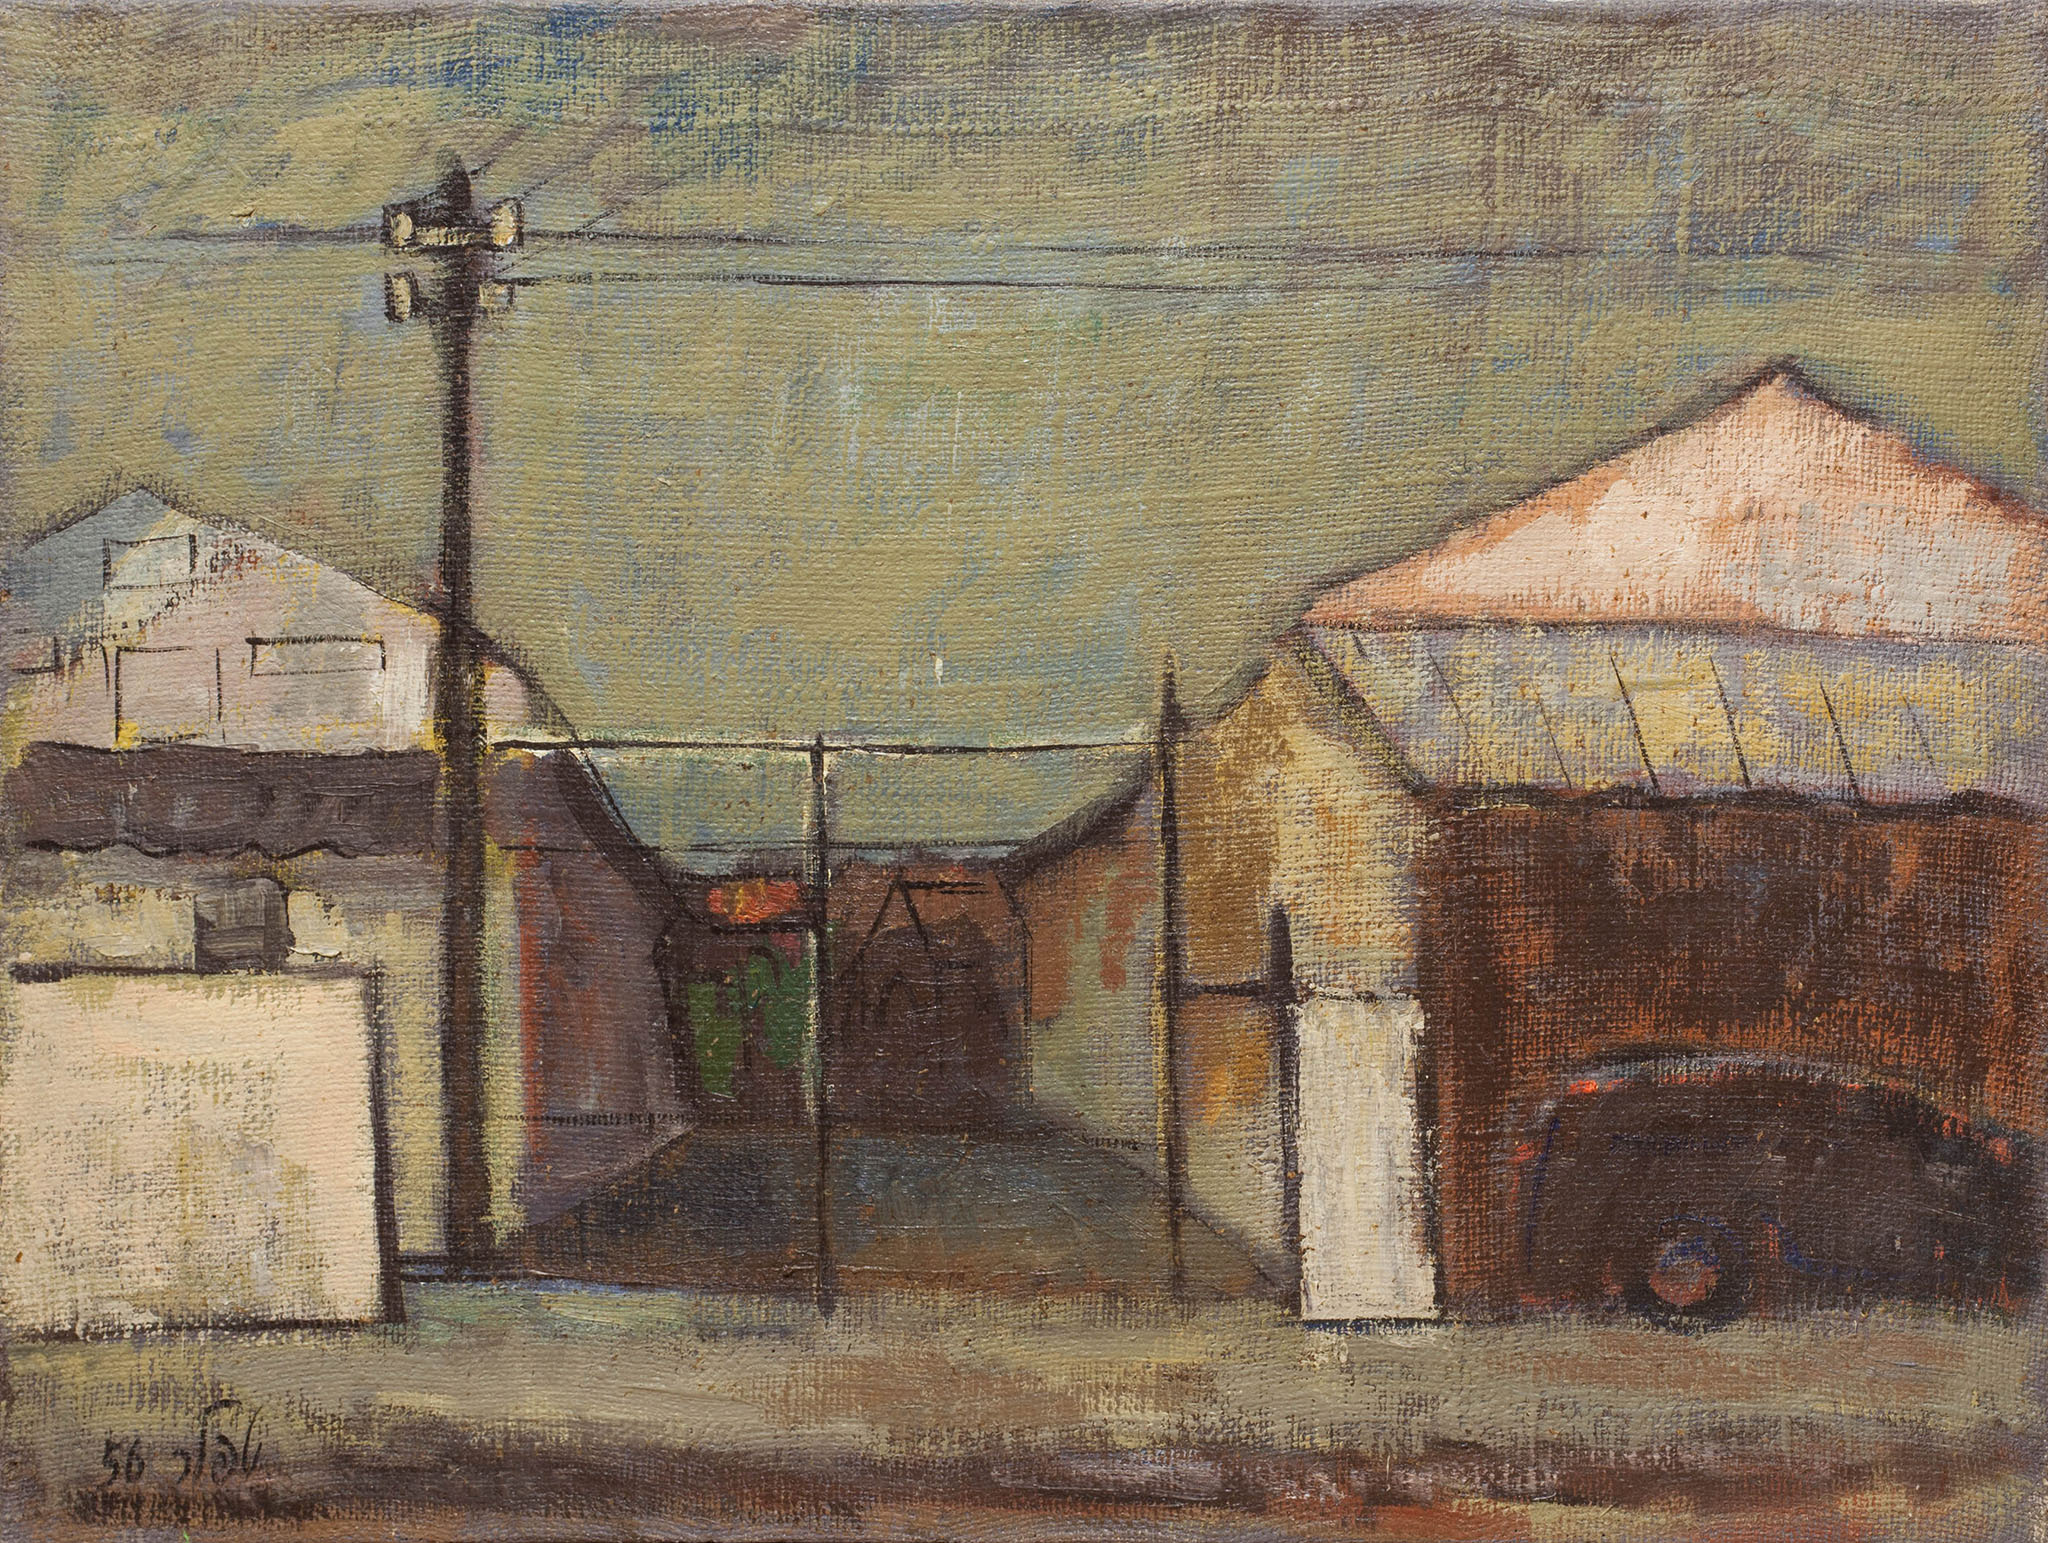 שמואל טפלר, "נוף אורבני", 1956, שמן על בד, 73x55 ס"מ